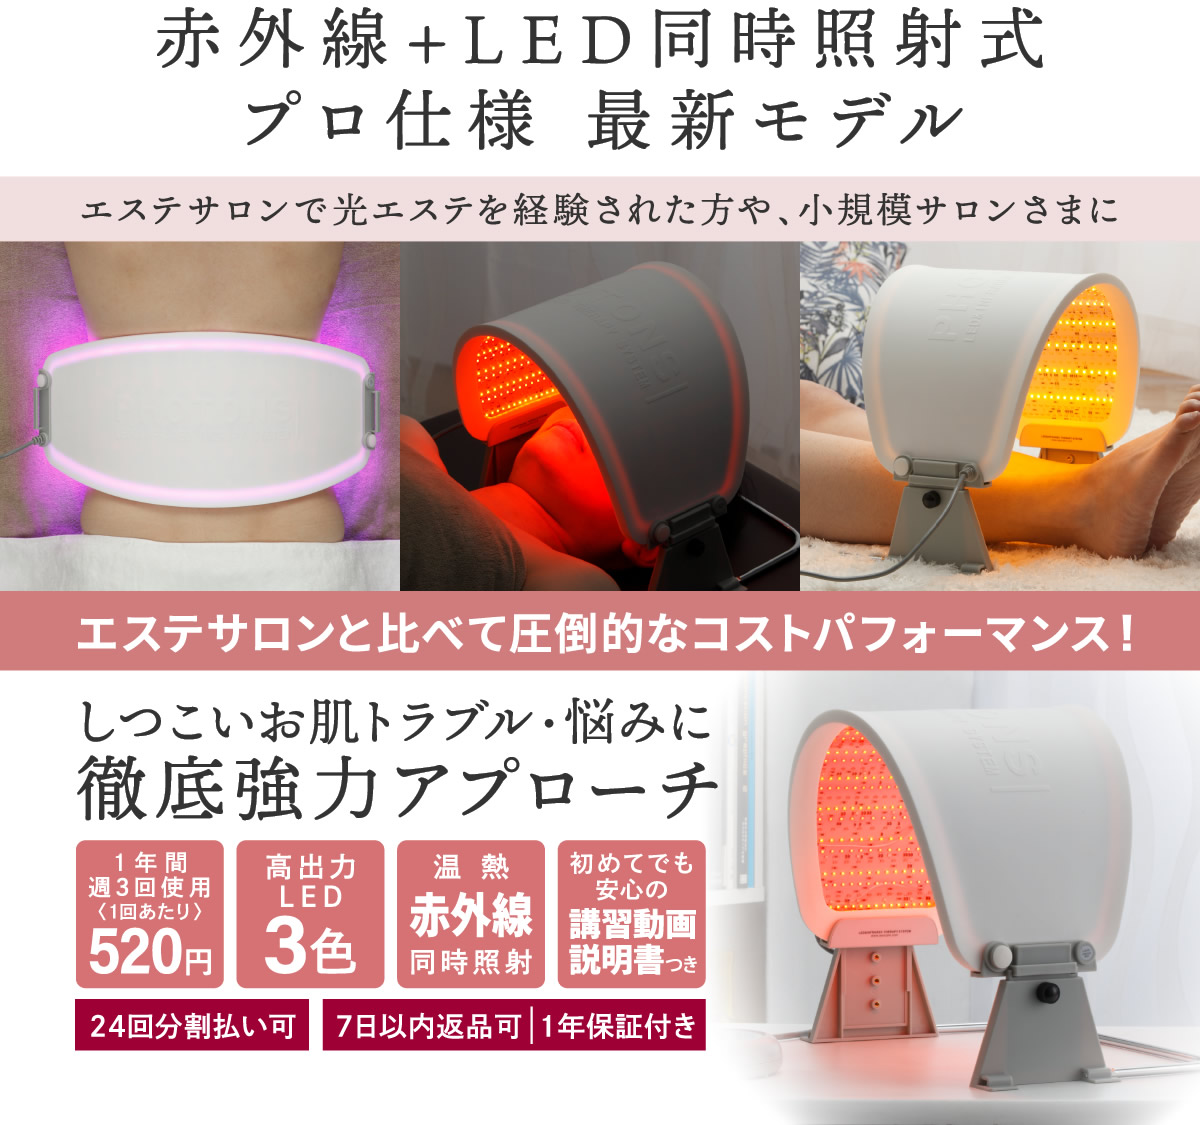 LED Salon Pro | 製品一覧 | LED美顔器専門店 LED Salon